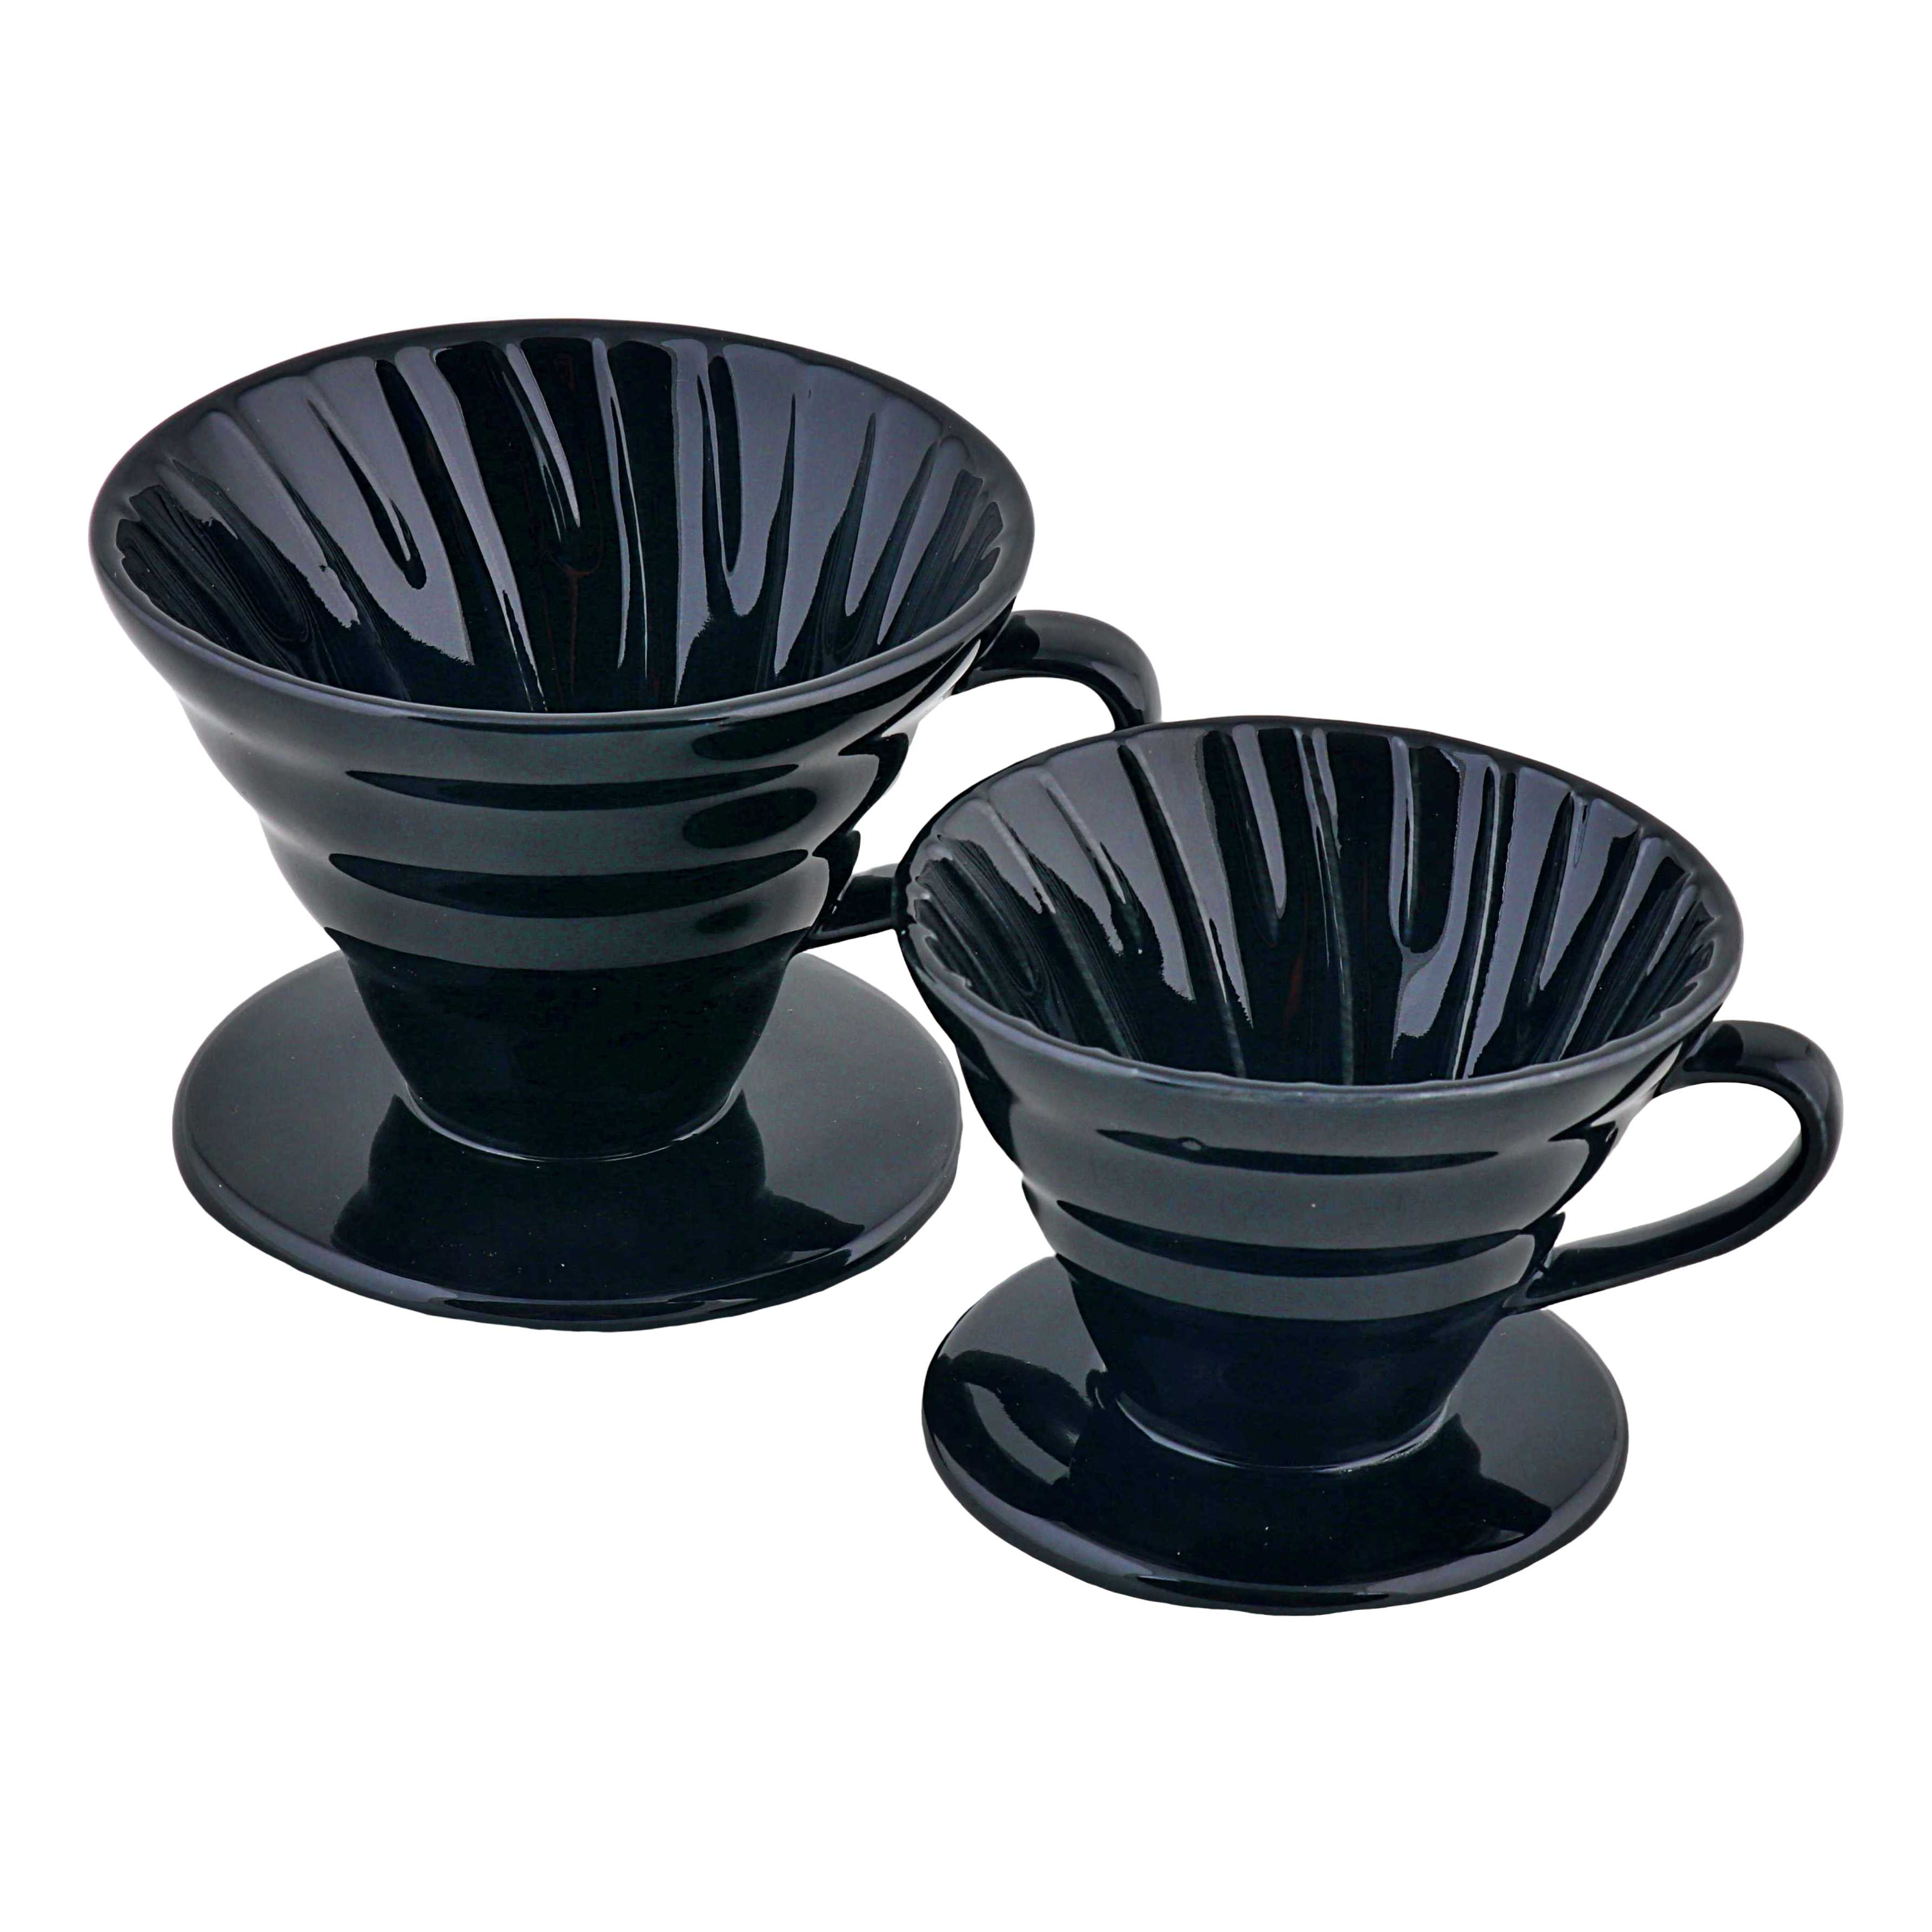 ถ้วยดริปเซรามิค ถ้วยกรองกาแฟ ทรงกรวย 1 รู  Ceramic Coffee Dripper สีดำ